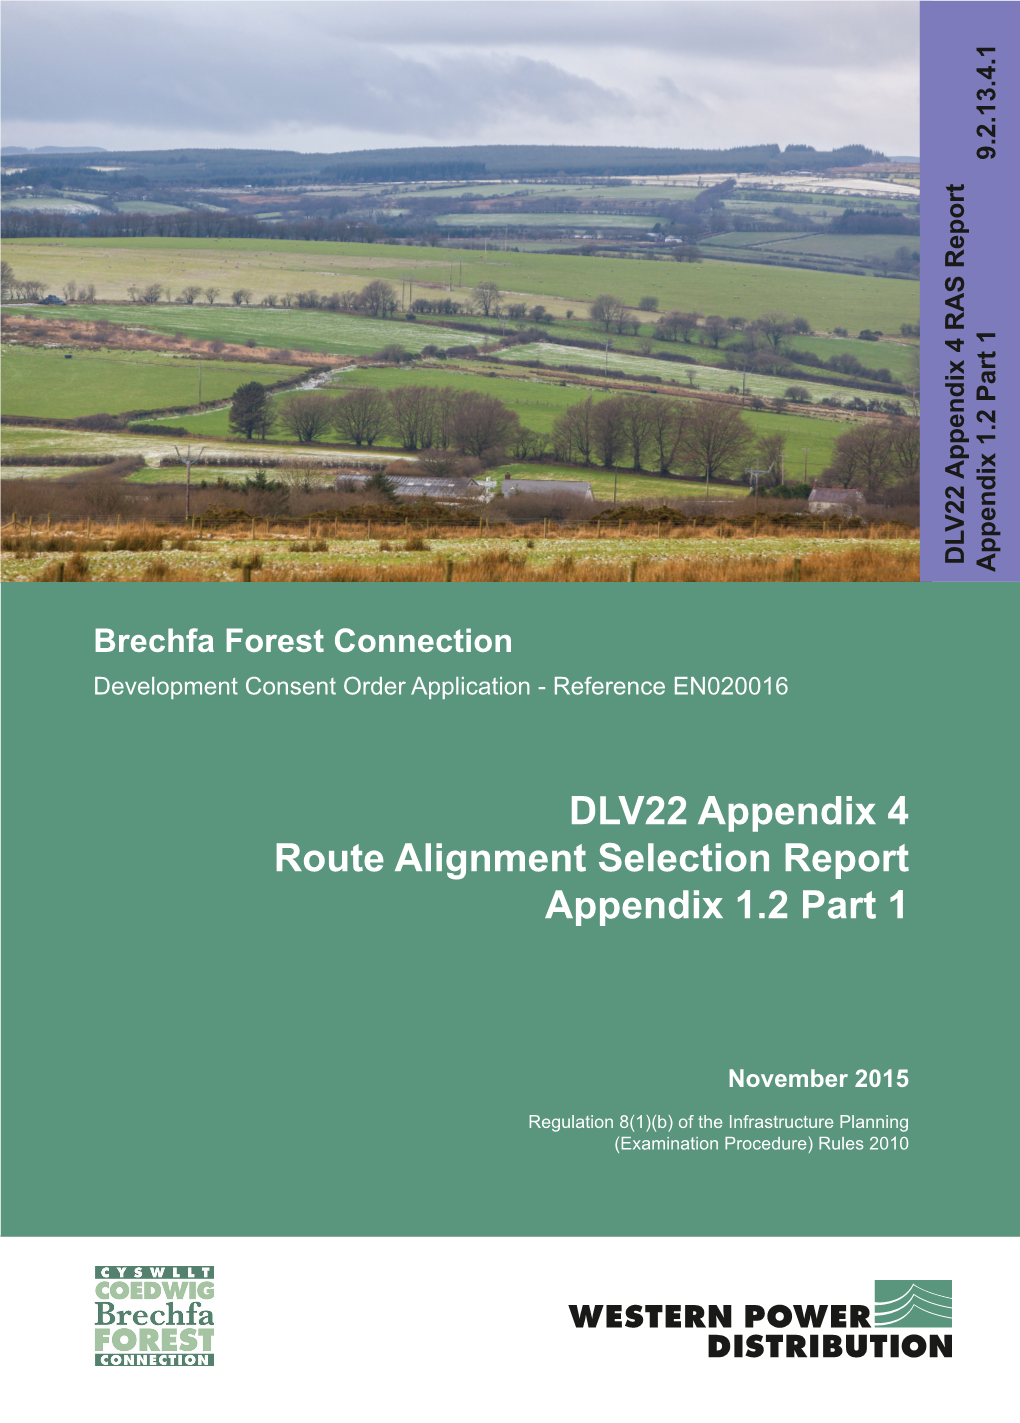 DLV22 Appendix 4 Route Alignment Selection Report Appendix 1.2 Part 1